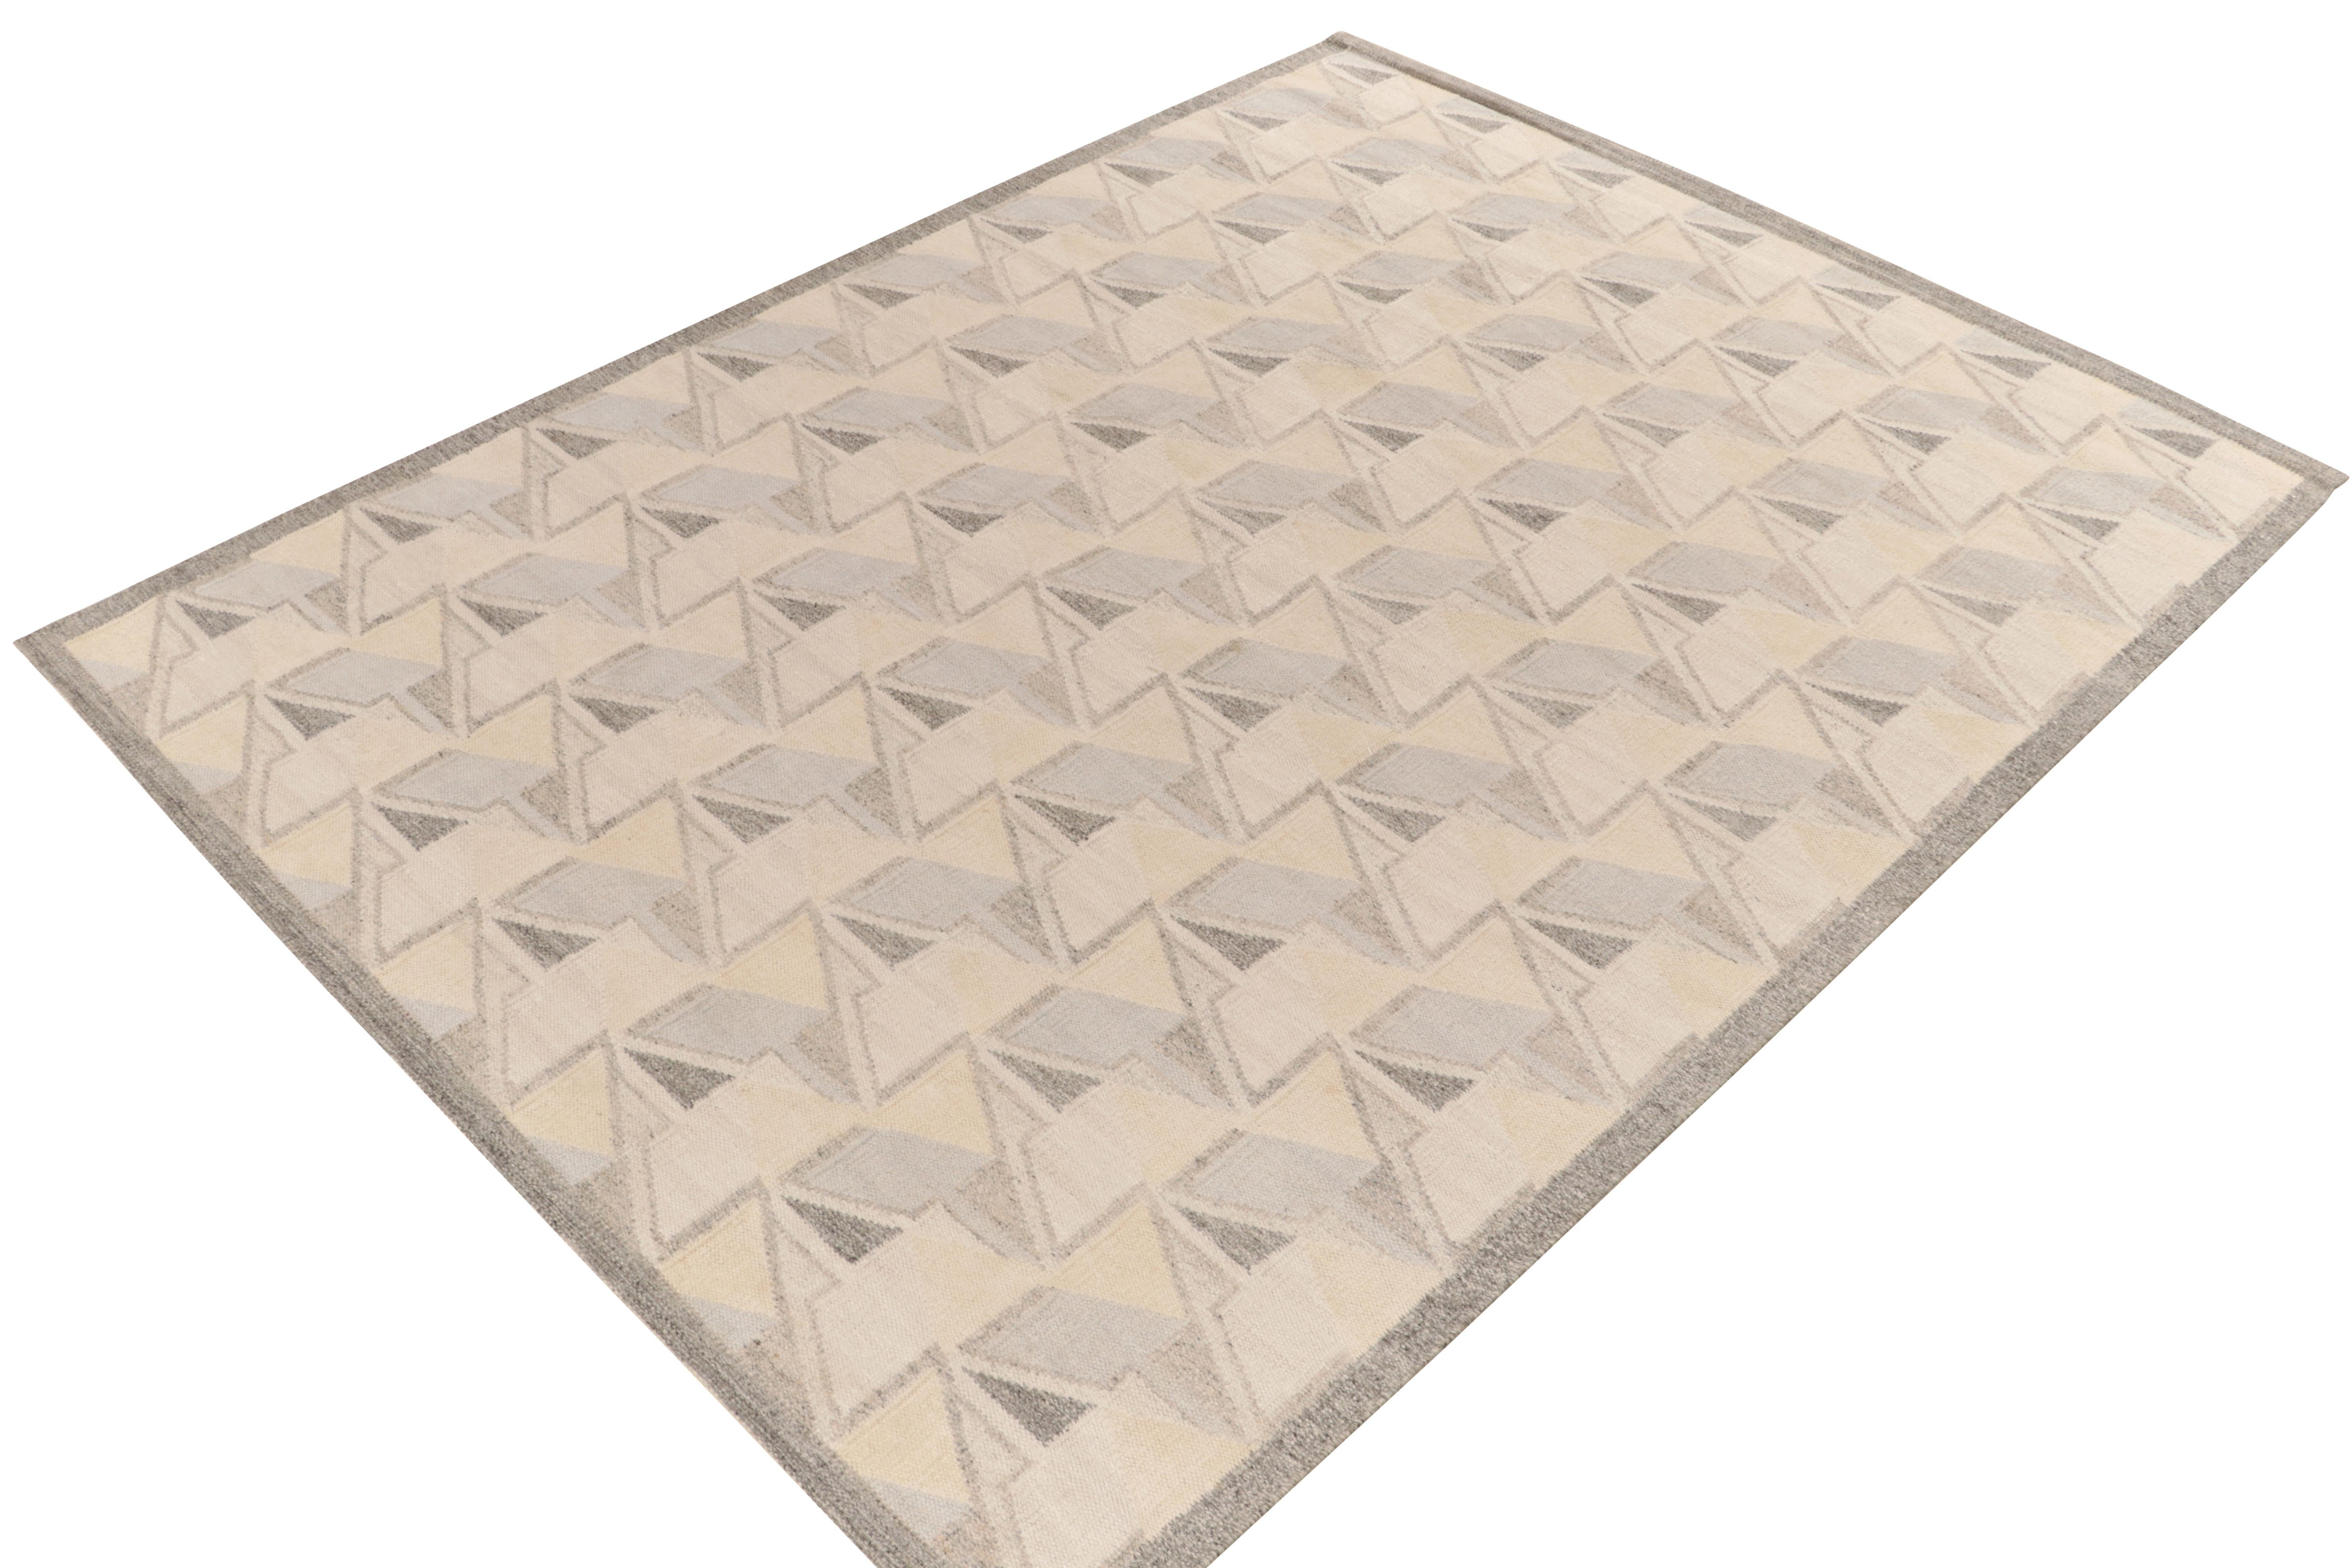 Le kilim de style scandinave de Rug & Kilim est issu de notre célèbre collection de tissage plat. Ce tapis 9x12 bénéficie de la finesse de l'esthétique suédoise avec un motif géométrique dextre qui donne une impression de 3D. La gamme de couleurs en